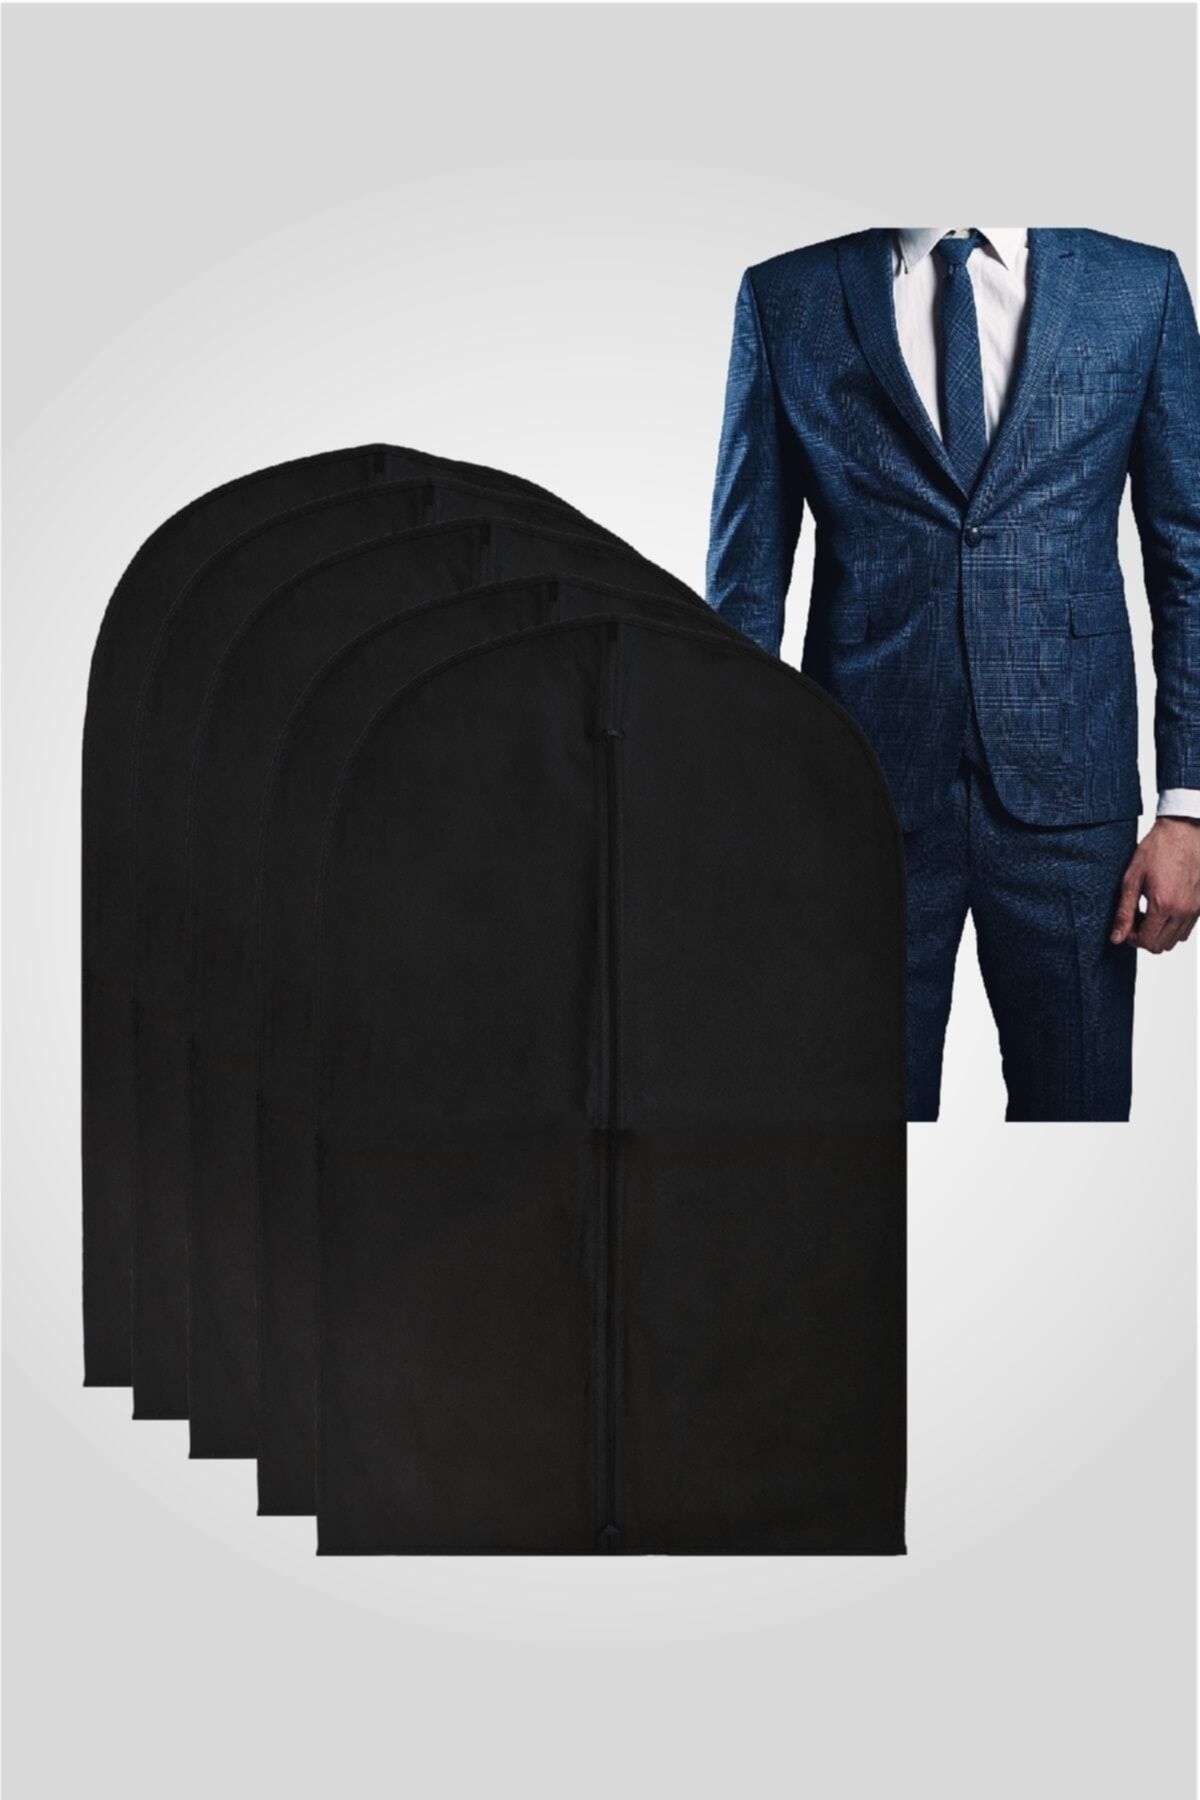 PEVA TEKSTİLİ Takım Elbise Kılıfı-gamboç Siyah 50 Gr. ( 5 Adet ) Düz Model